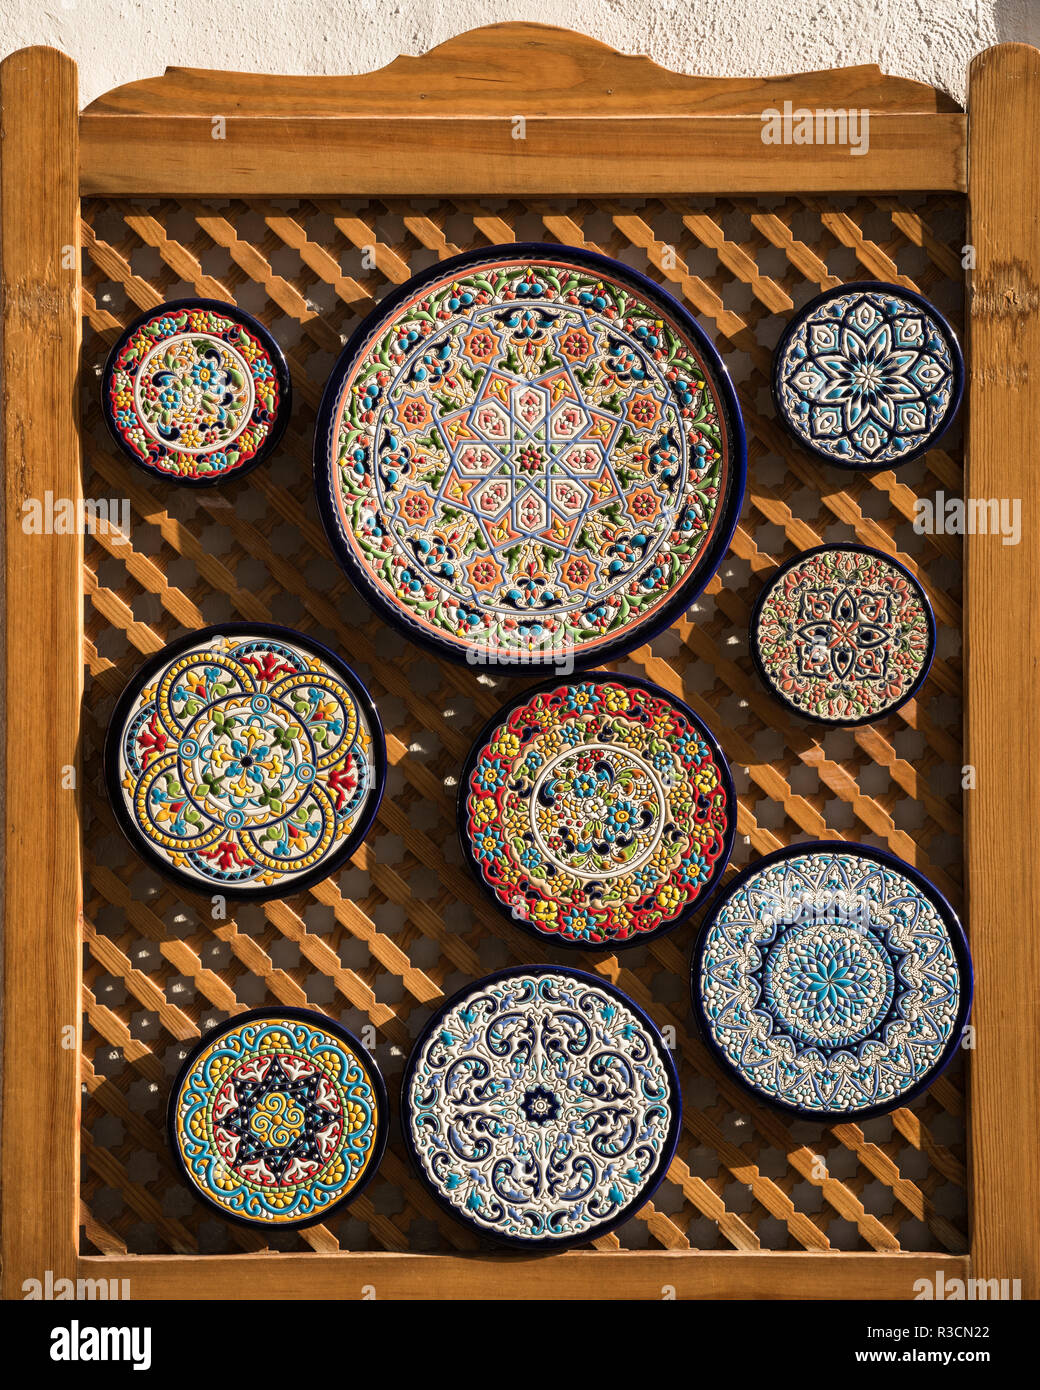 Les plaques traditionnelles à vendre, Cordoue, Andalousie, Espagne Banque D'Images